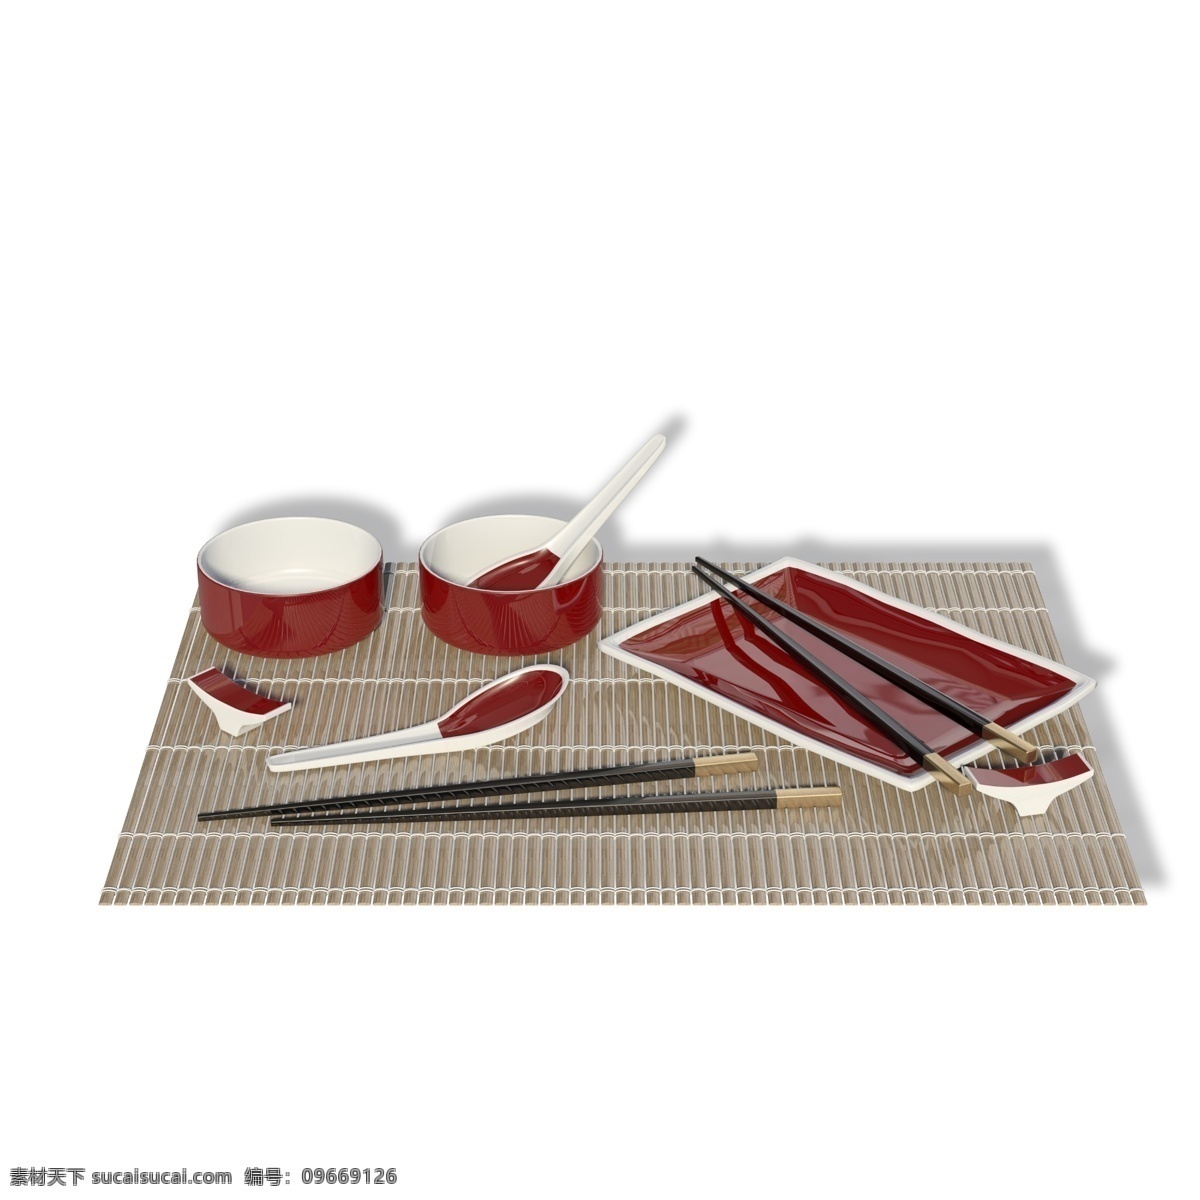 日式 个人 餐具 套装 组合 饭碗 碟子 筷子 勺子 垫子